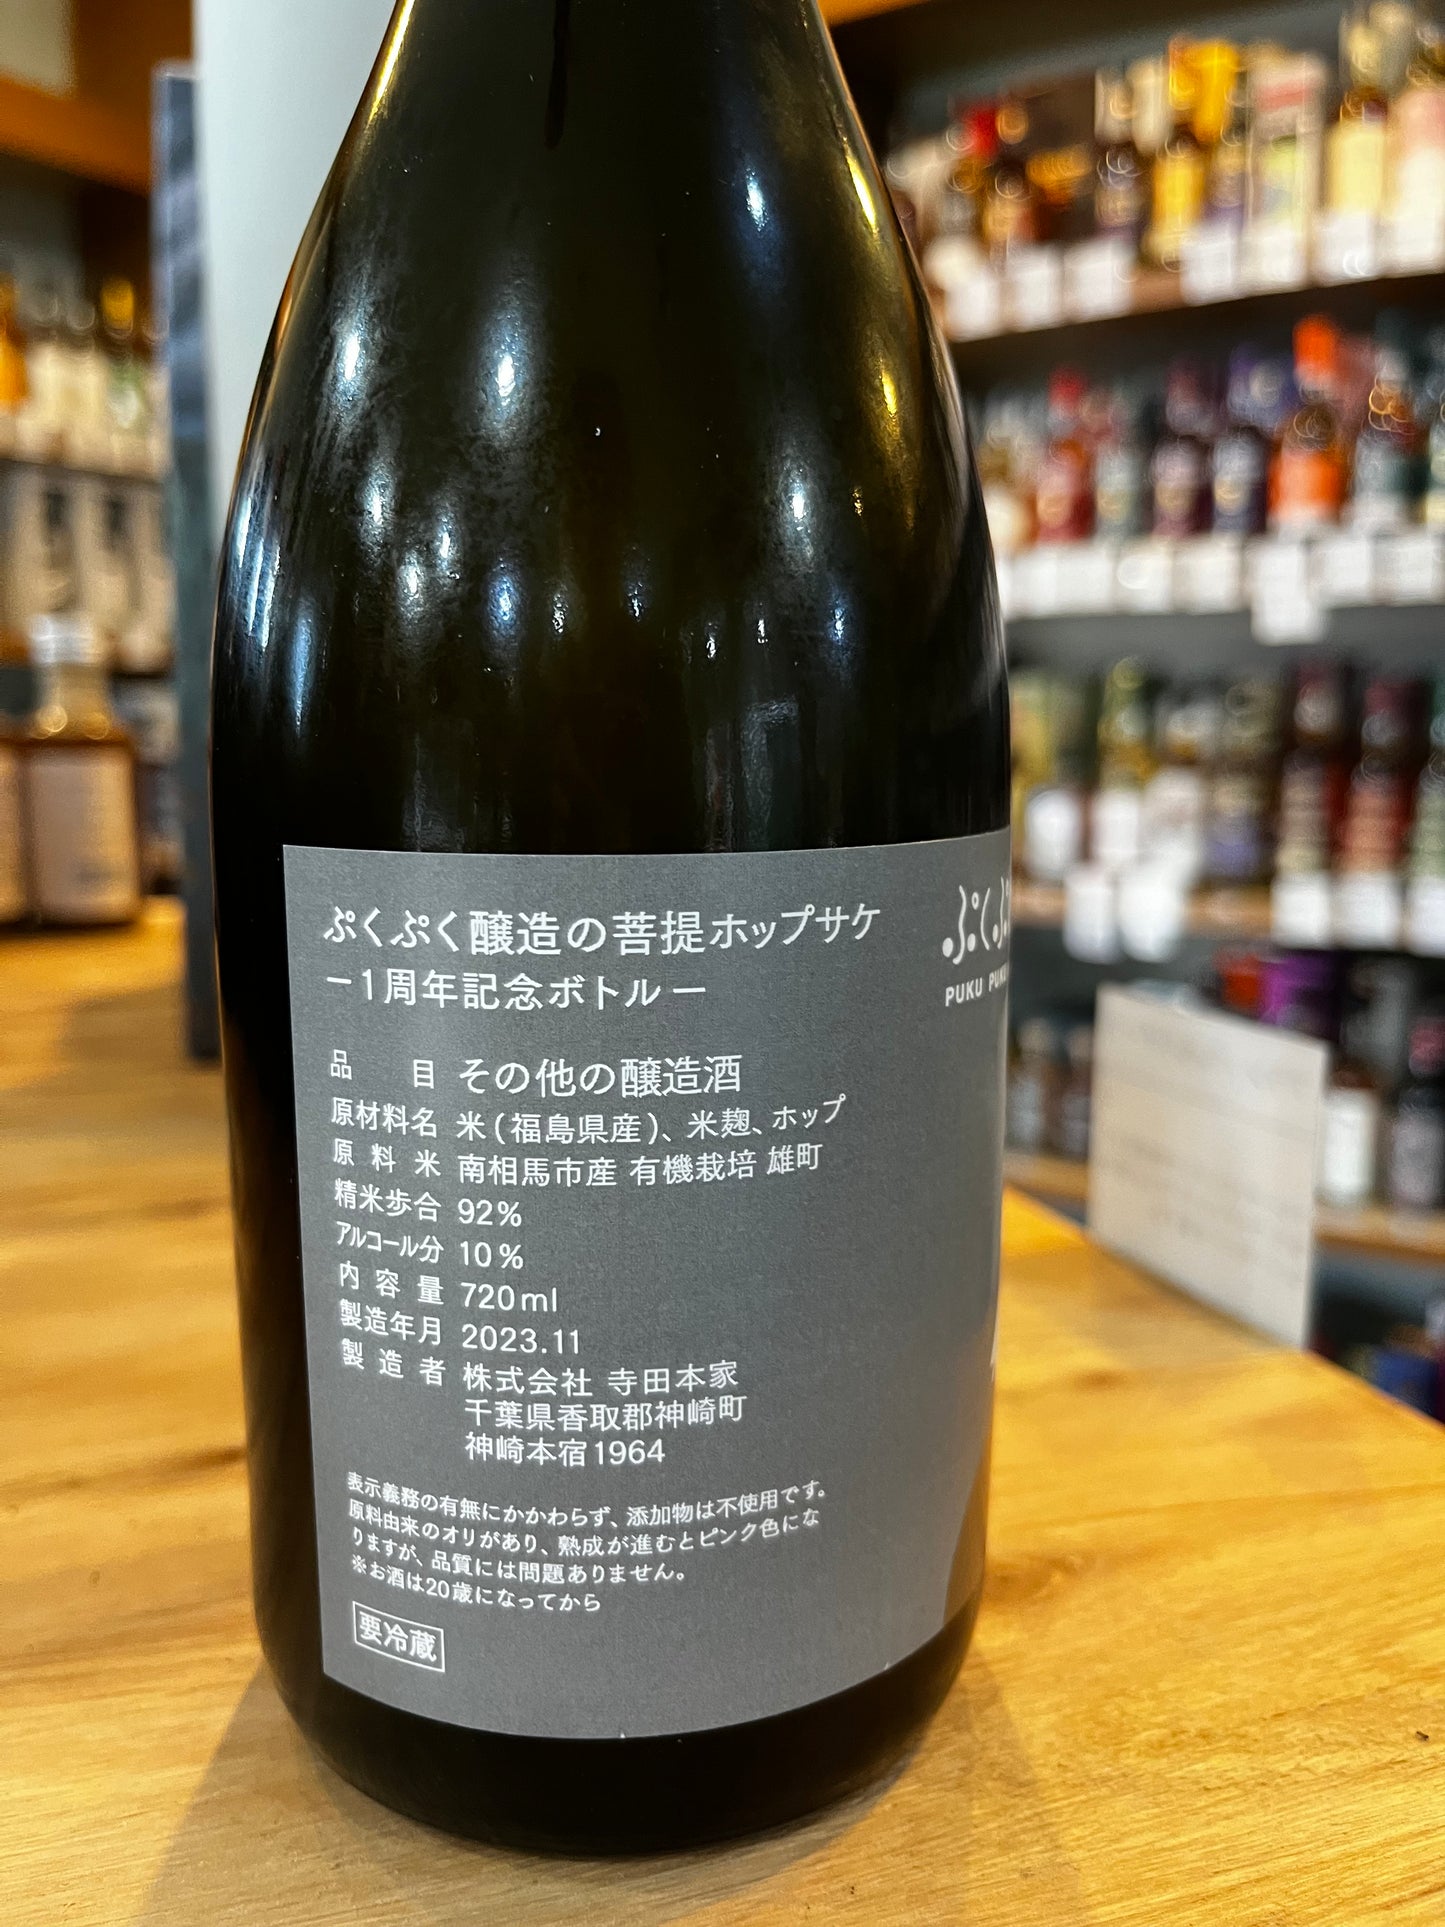 ぷくぷく醸造の菩提ホップサケ -1周年記念ボトル-　720ml